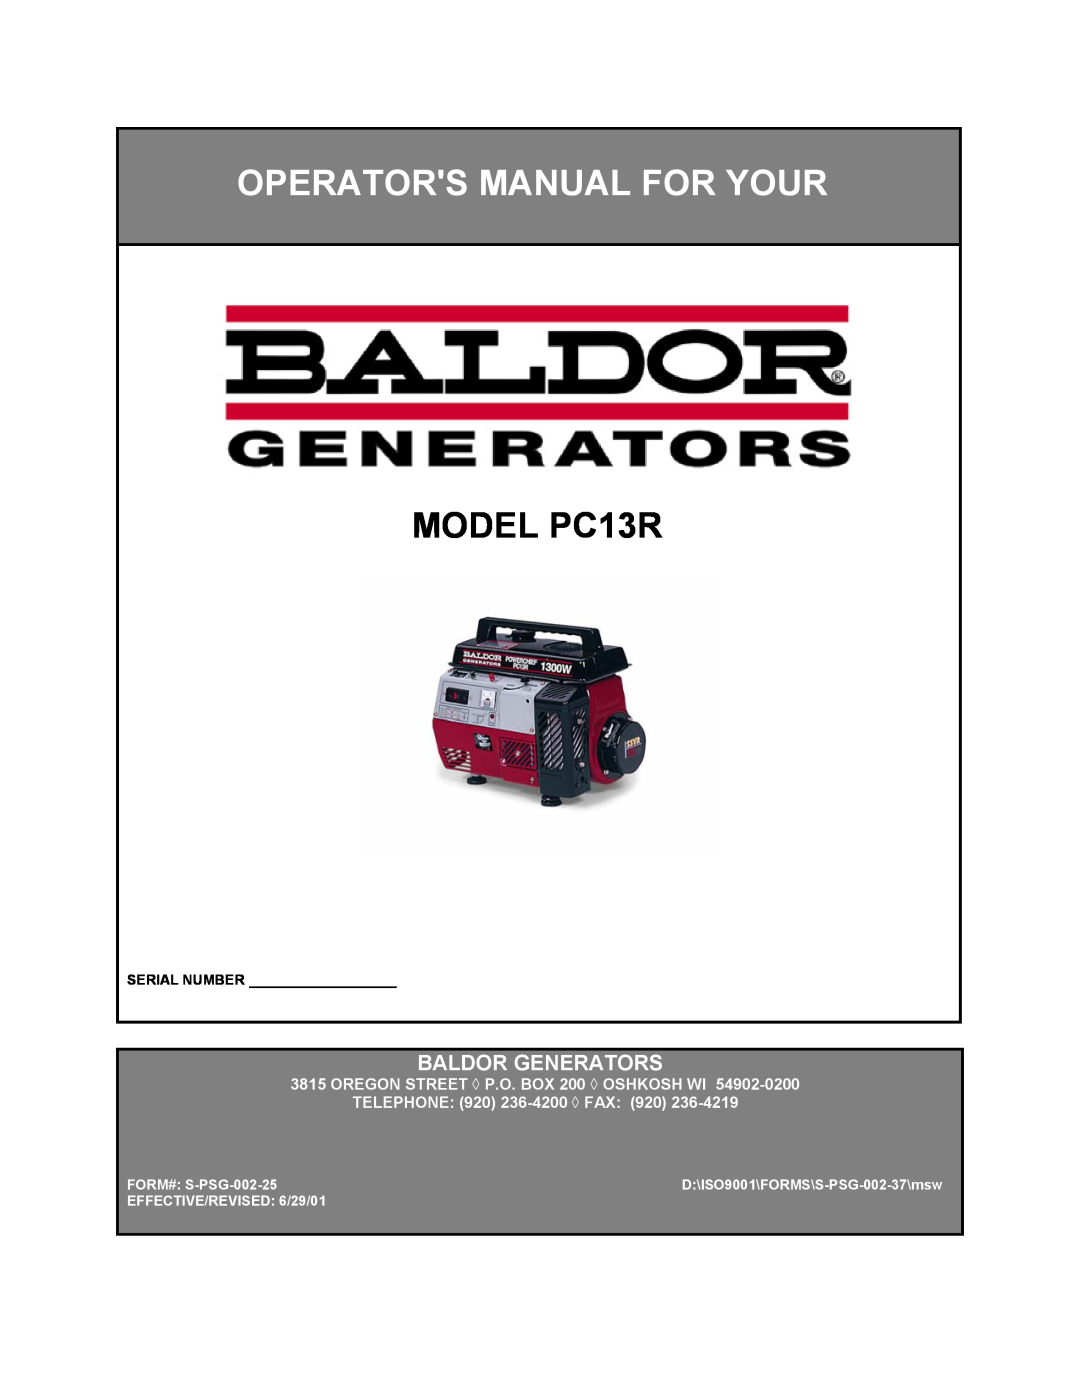 Baldor manual MODEL PC13R, Operators Manual For Your, Baldor Generators, OREGON STREET P.O. BOX 200 OSHKOSH WI 